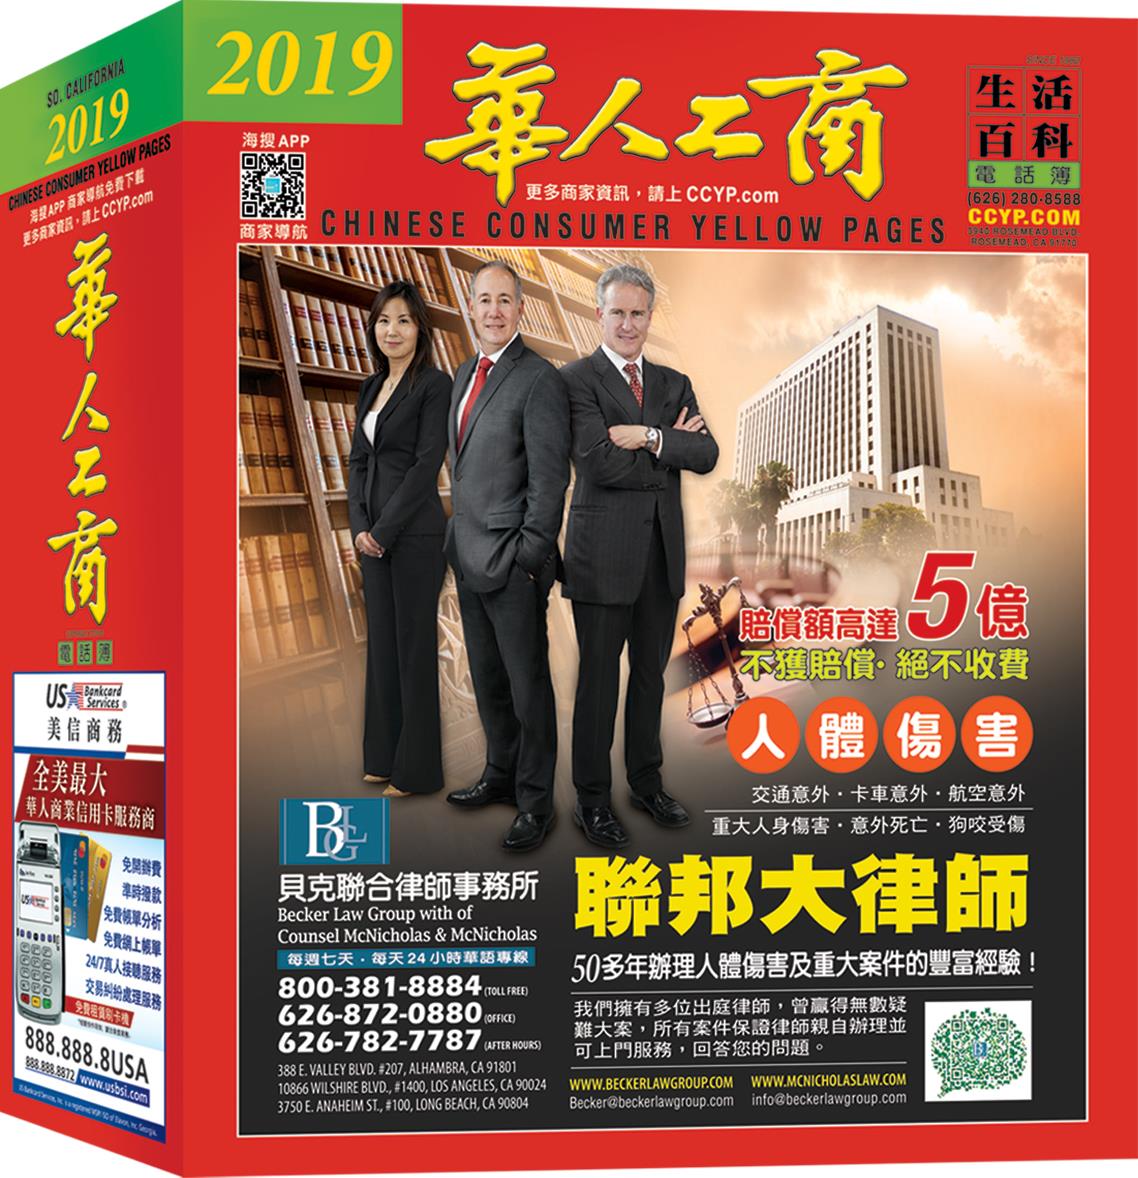 华人工商电话簿2019年版本即將截稿發行 | 及时将与您见面，欢迎索取！